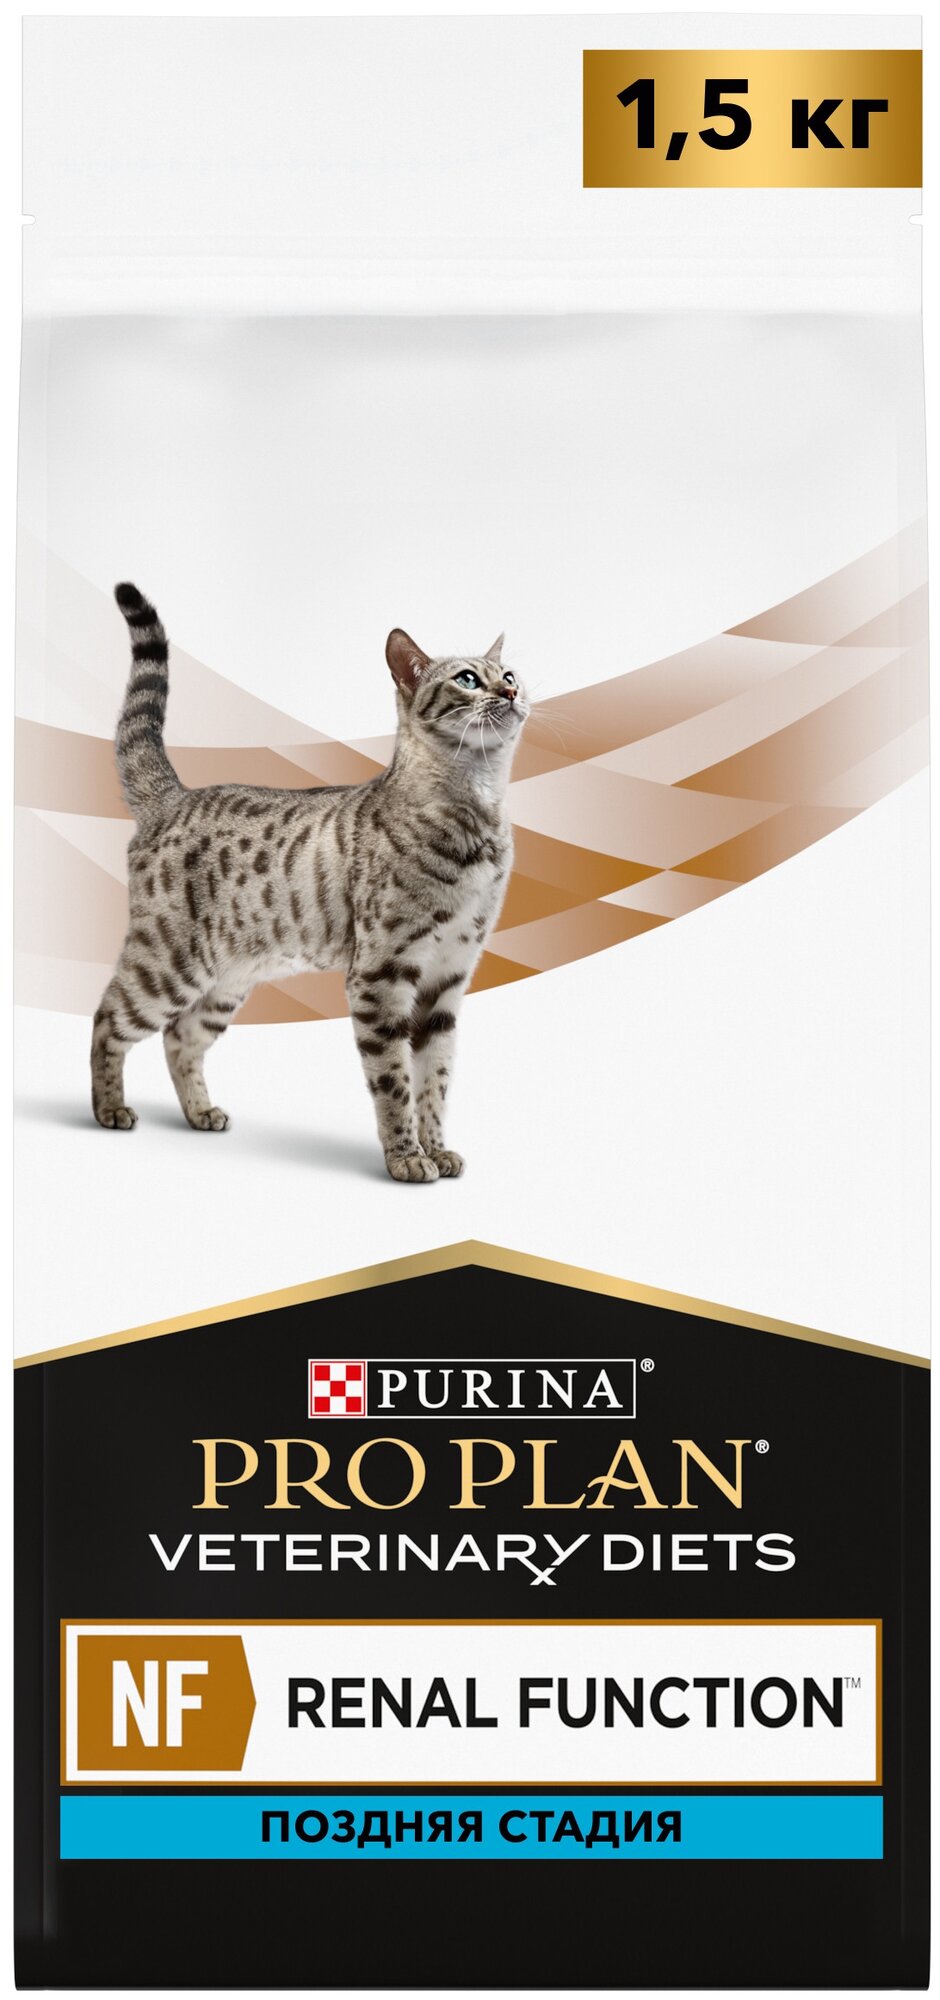 Сухой корм для кошек Purina Pro Plan Veterinary Diets NF Renal Function Advanced Care, при поздней стадии почечной недостаточности, 1.5 кг